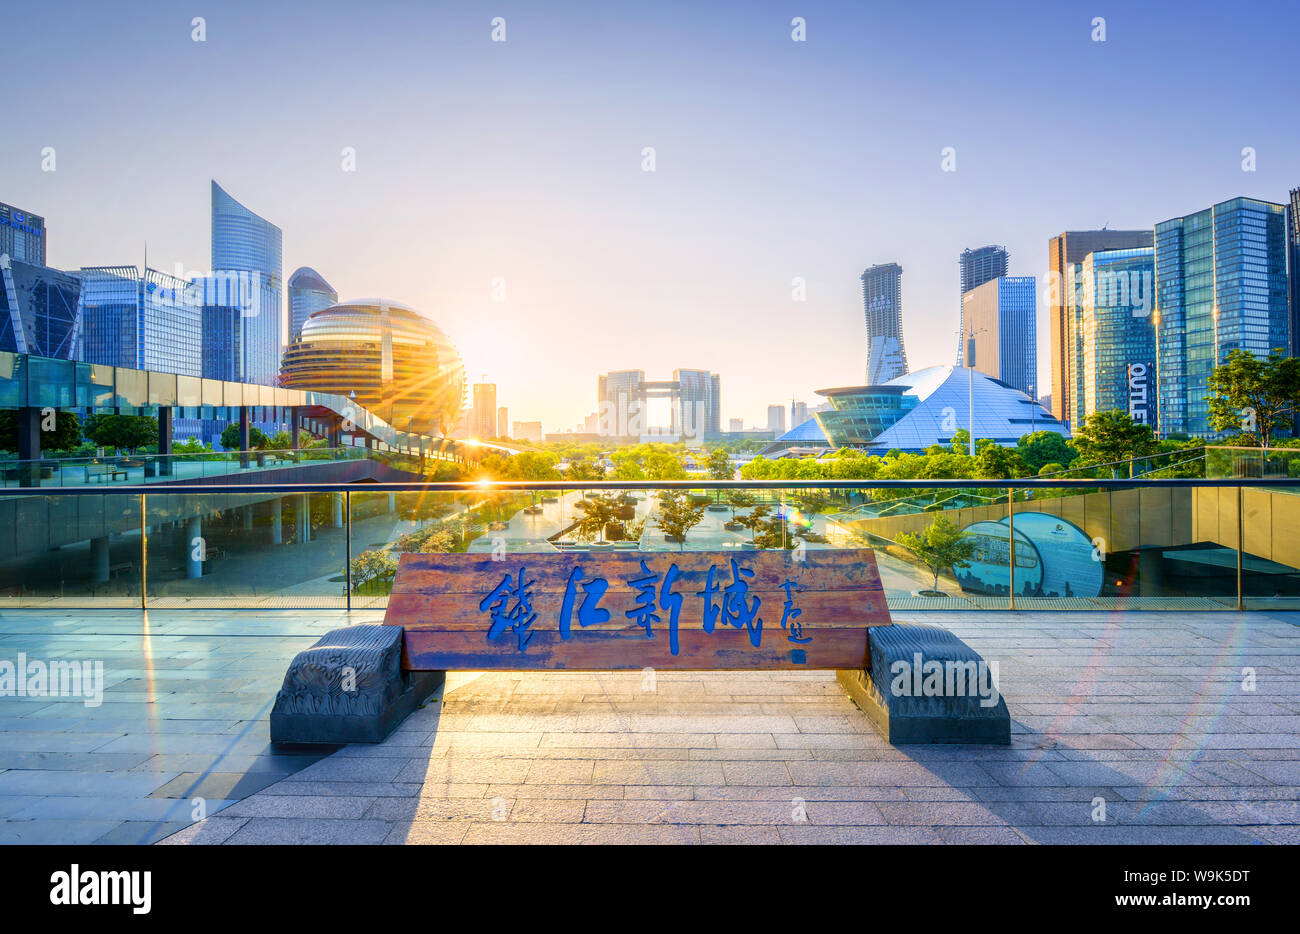 Nuovo quartiere commerciale con grattacieli. HDR shot con segno Qian Jiang Xin (Chen Qian Jiang Città Nuova) in caratteri cinesi, Hangzhou, Zhejiang, Cina Foto Stock